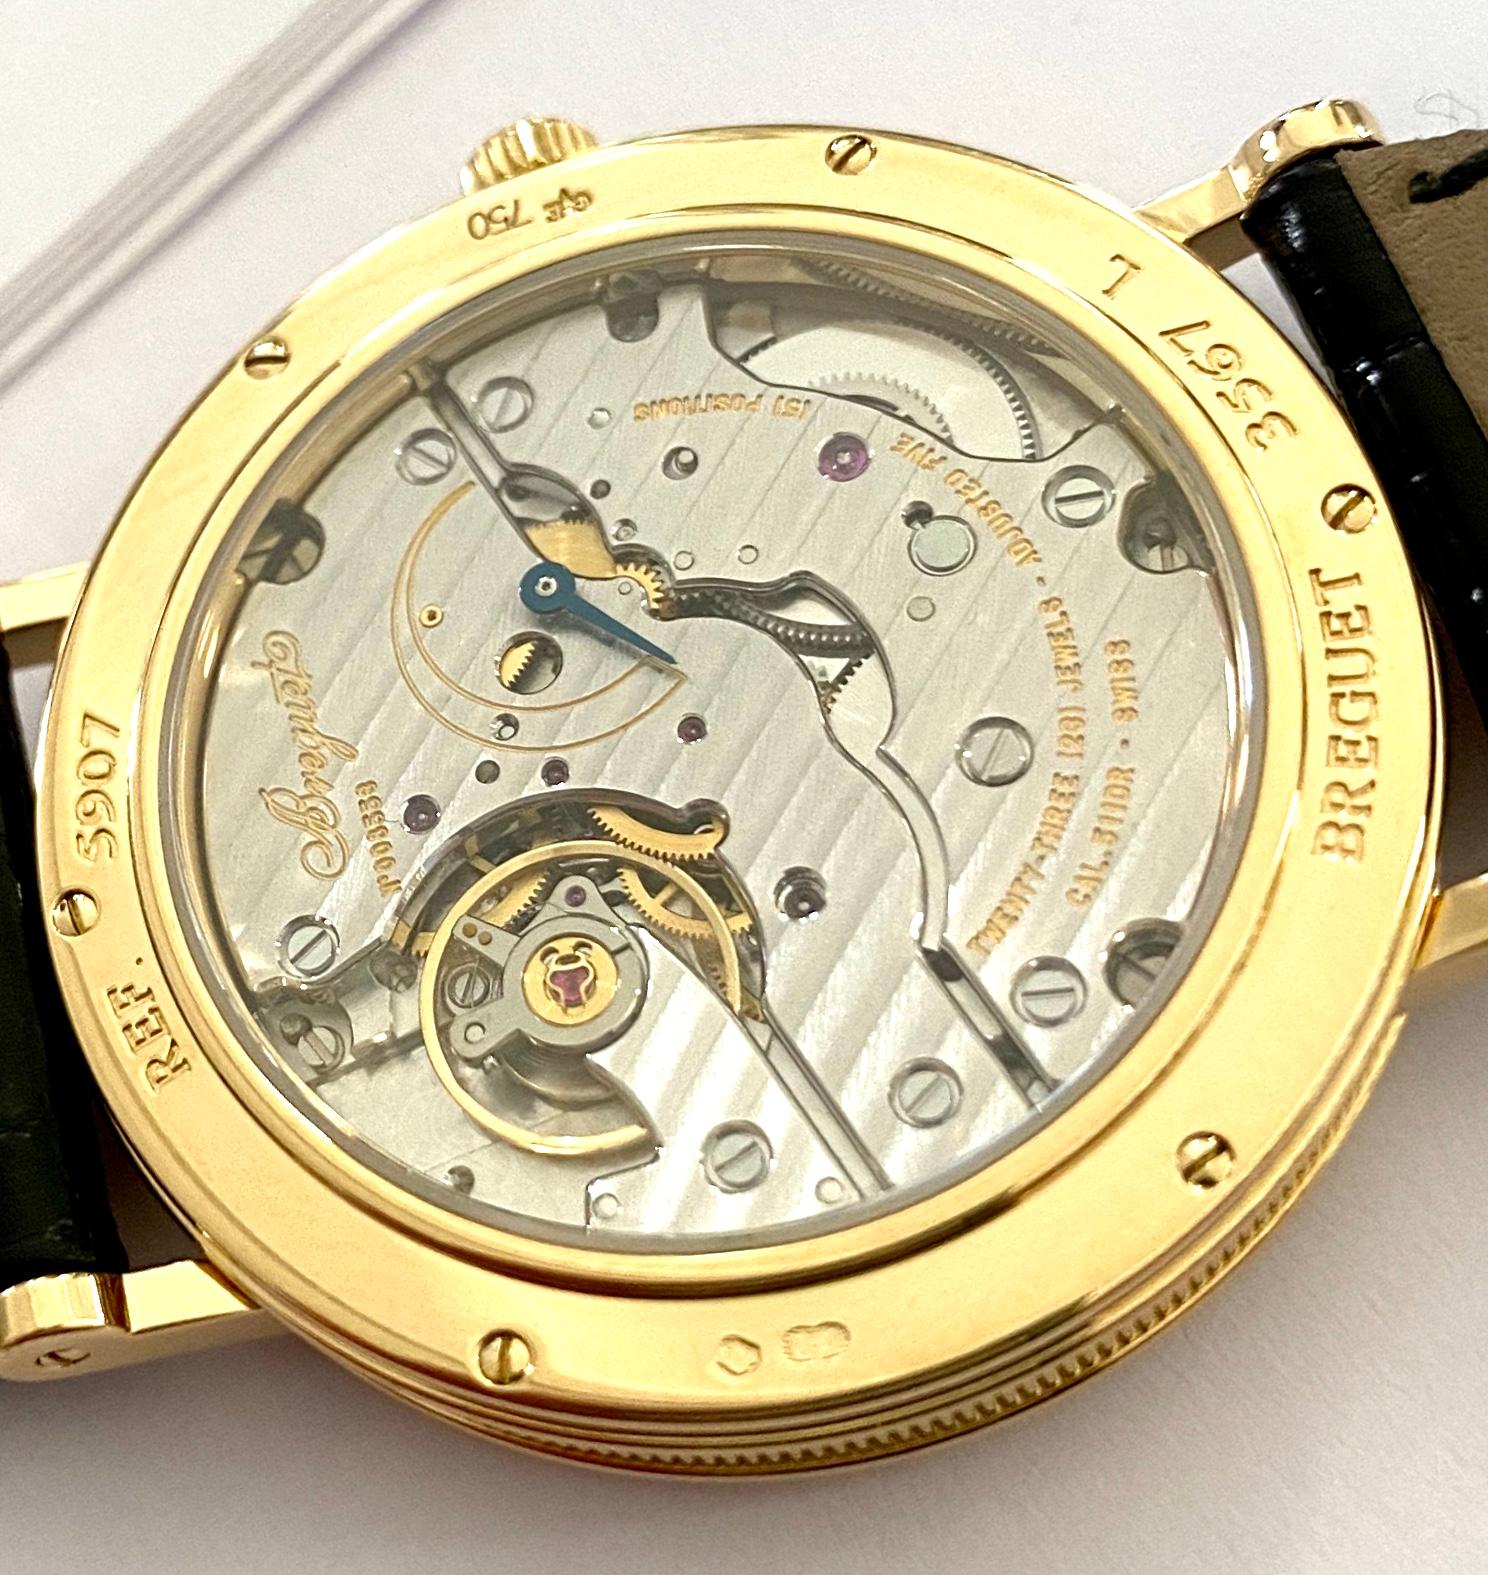 Women's or Men's Breguet Watch, 18 Karat Yellow Gold, Nr 5907 